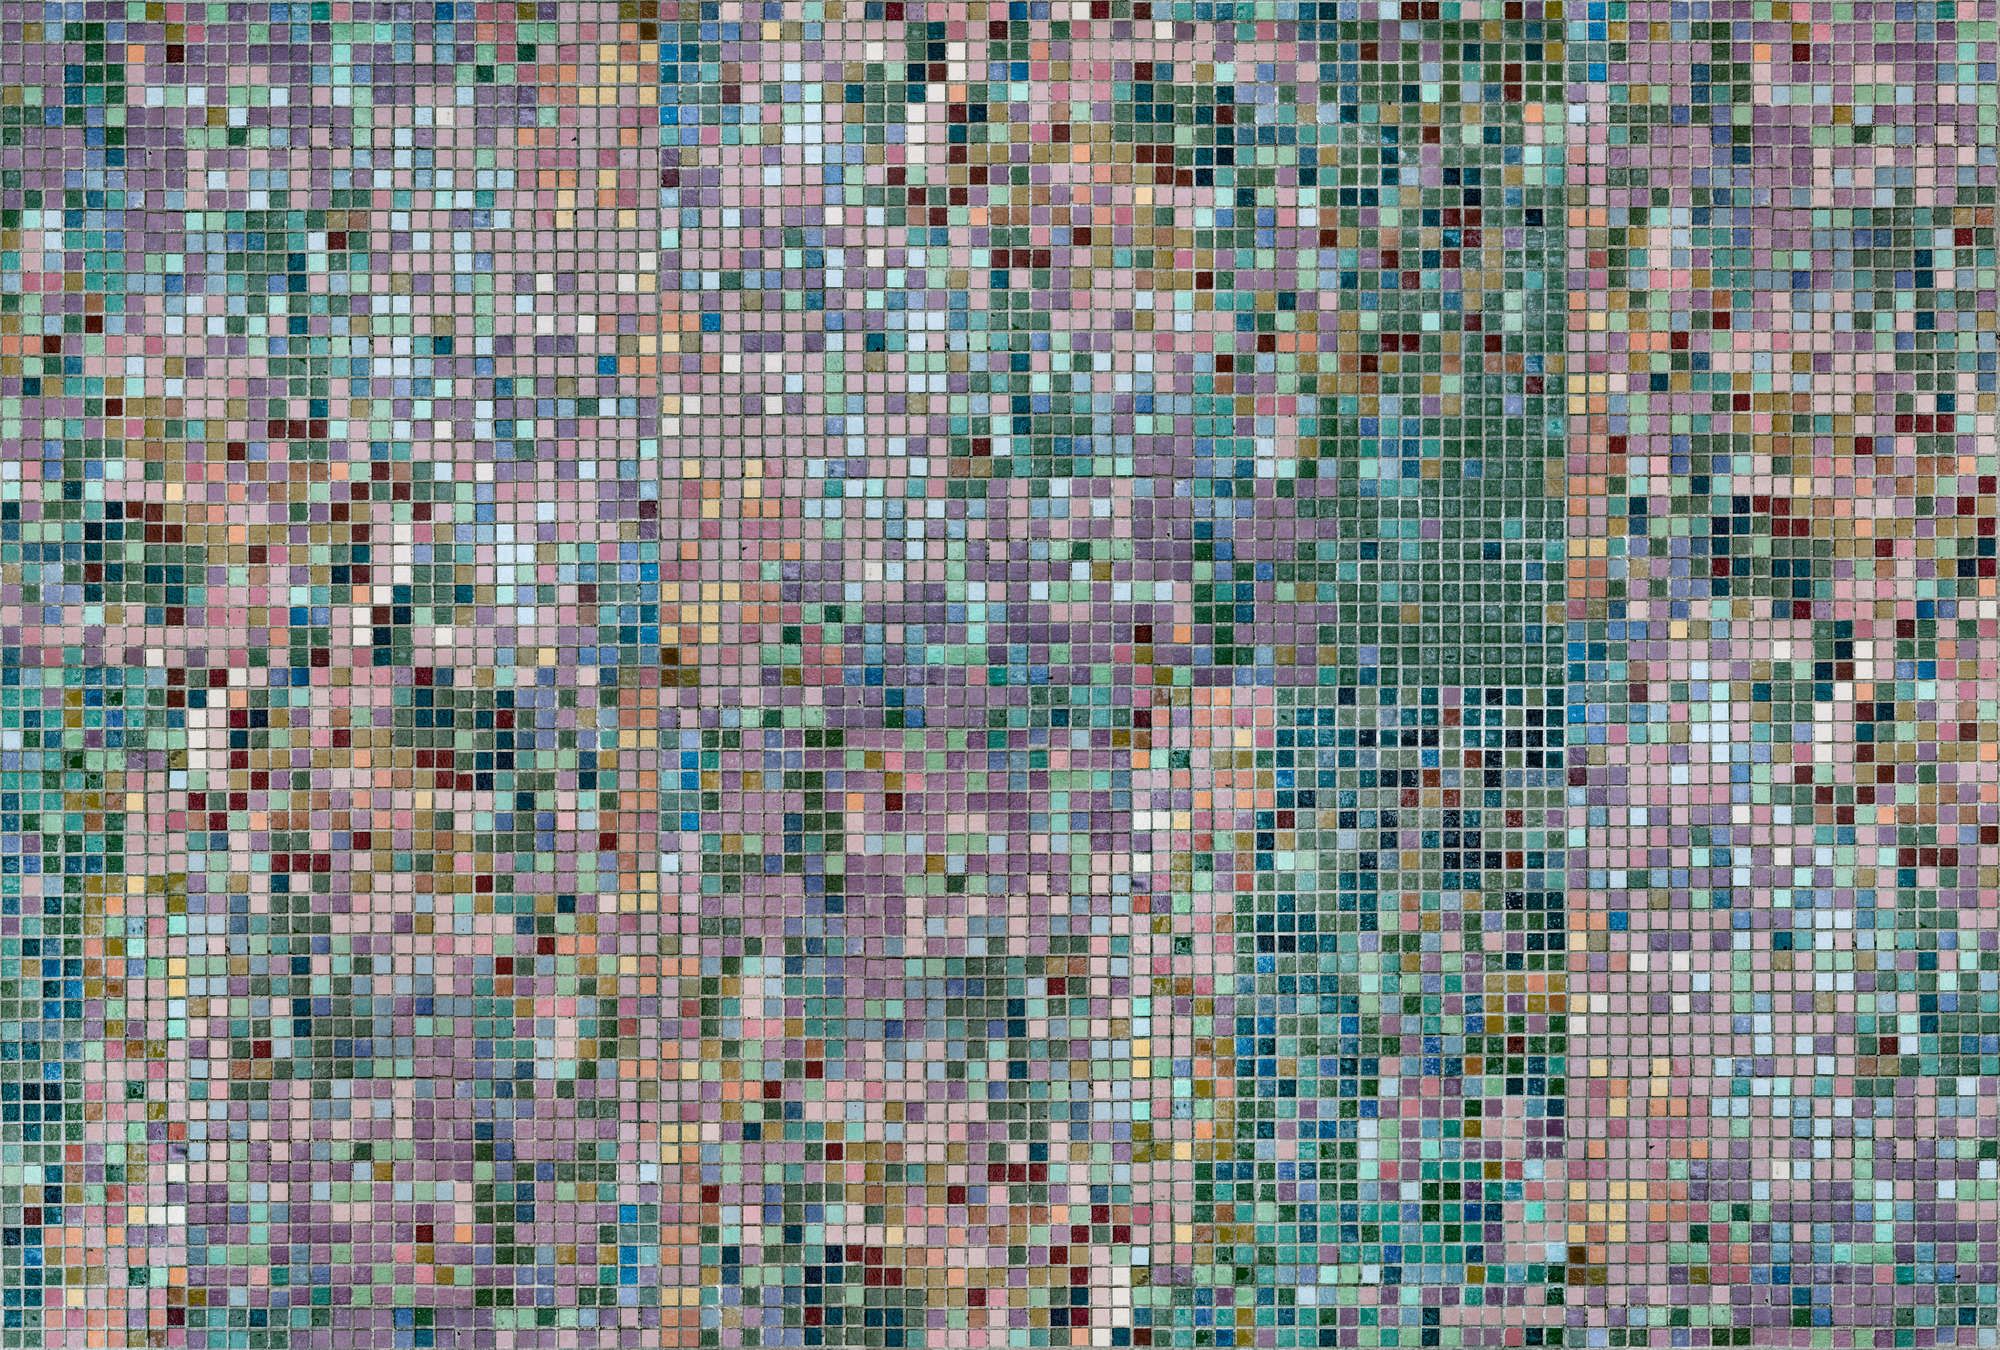             Digital behang »grand central« - Mozaïekpatroon in heldere kleuren - Licht gestructureerde vliesstof
        